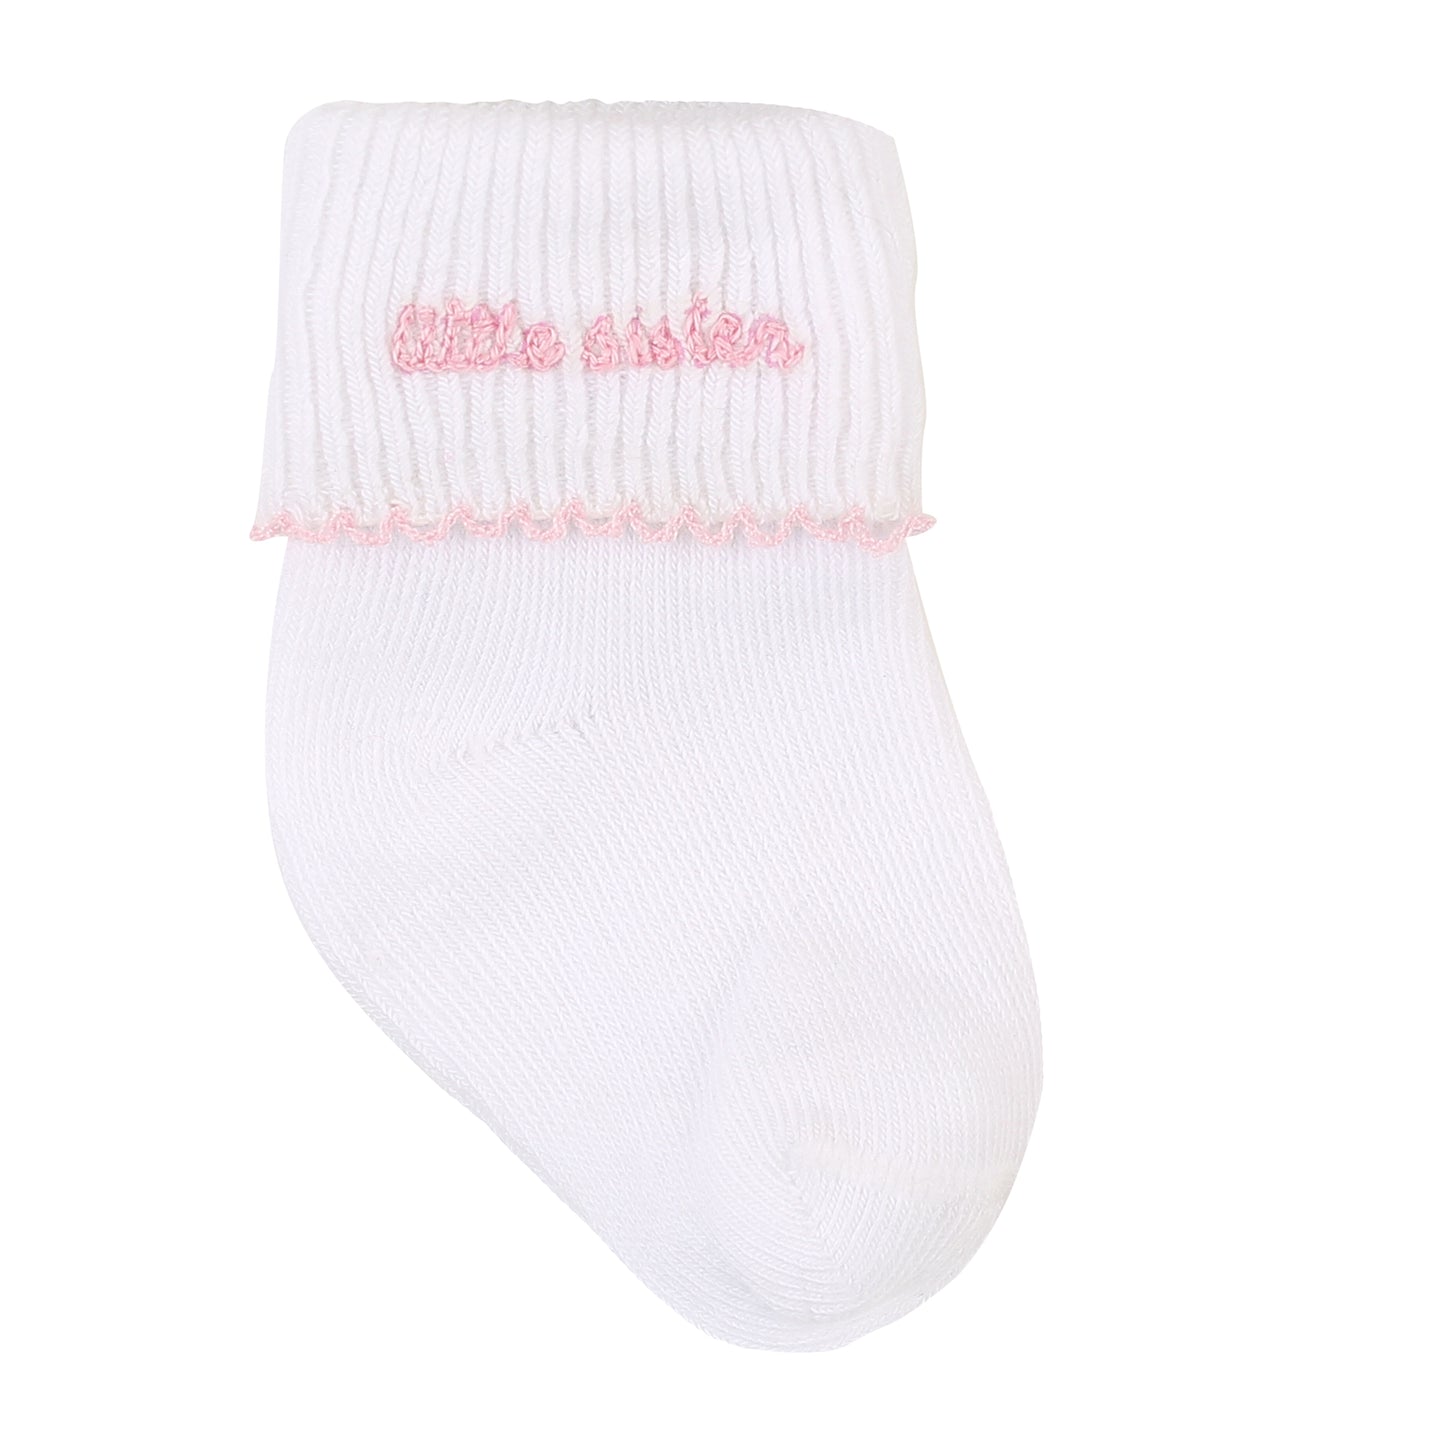 Little Sister Newborn Socks